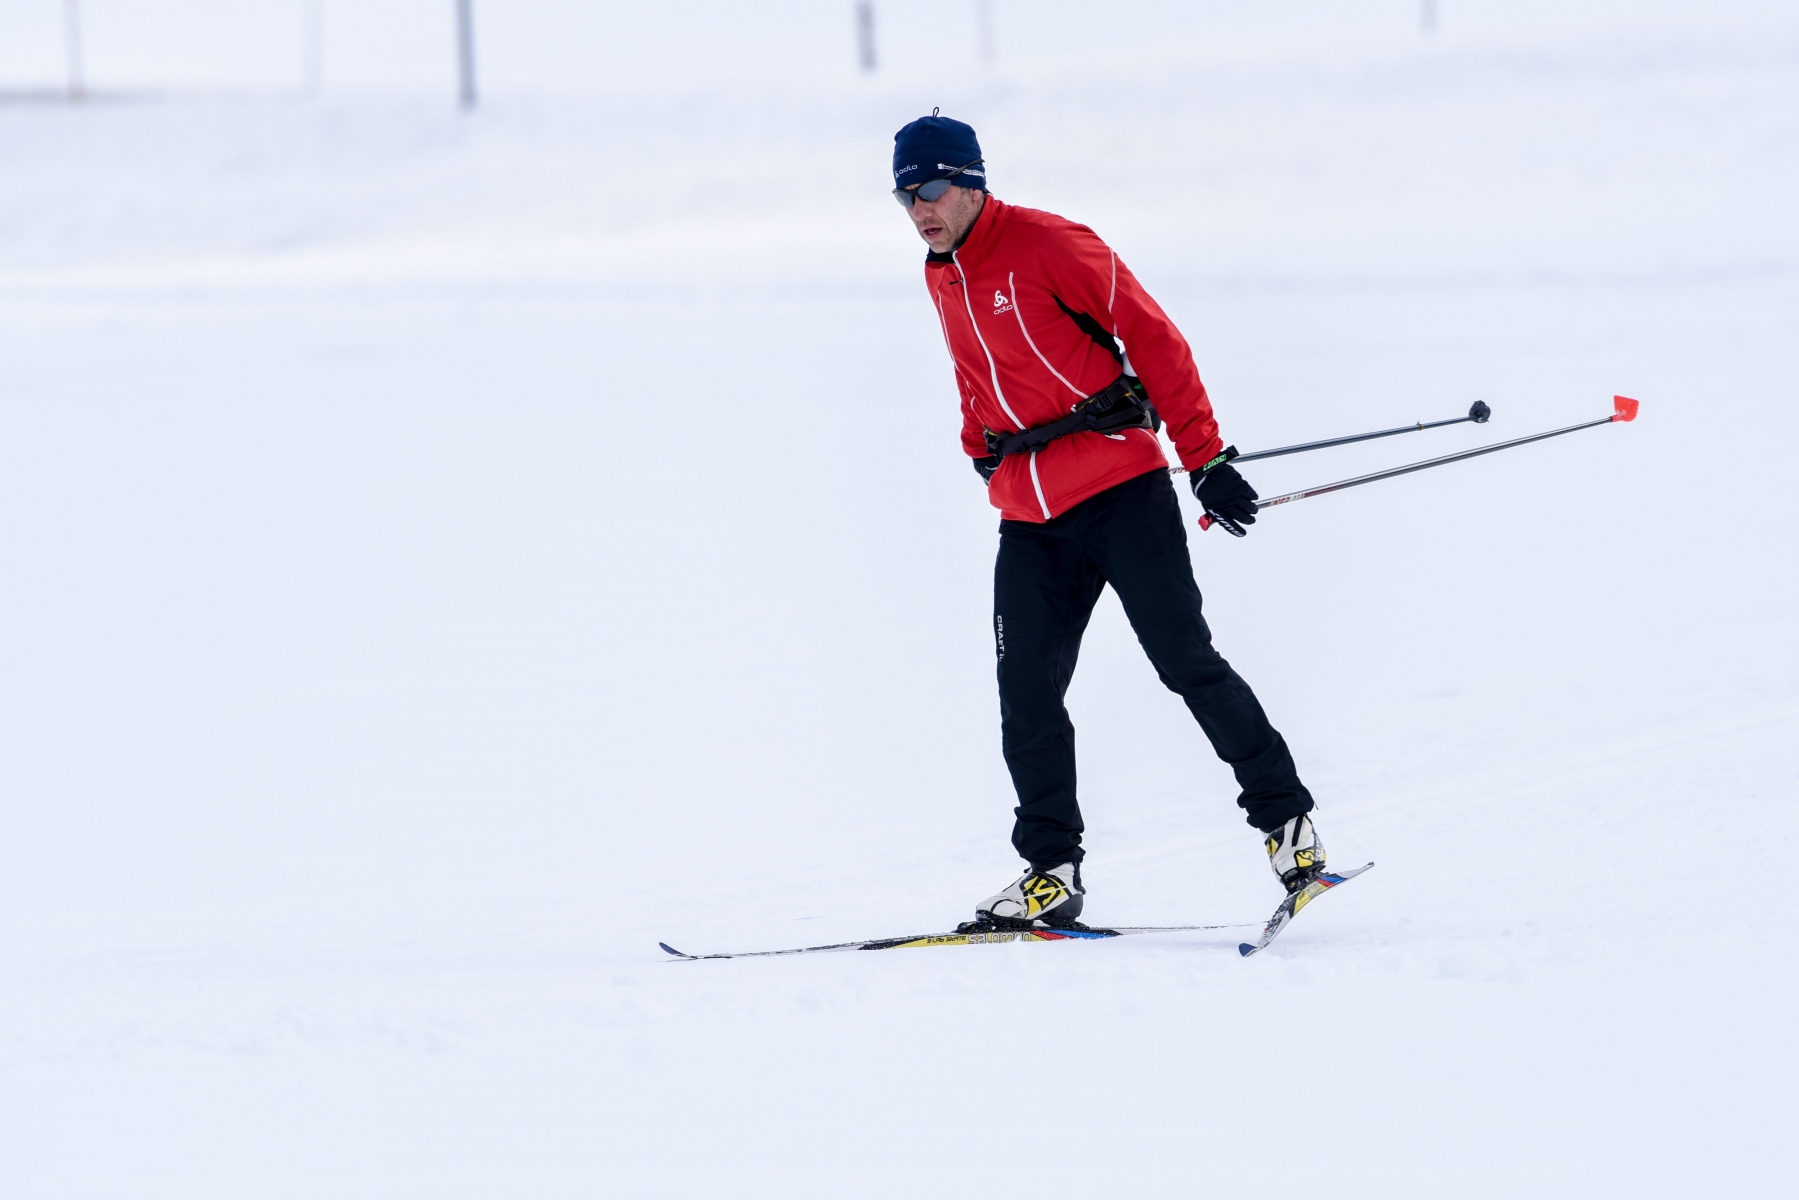 Prendre du plaisir à ski de fond sans puiser trop dans ses réserves d'énergie: tel est le but de ce sport-loisir, selon Laurent Donzé.